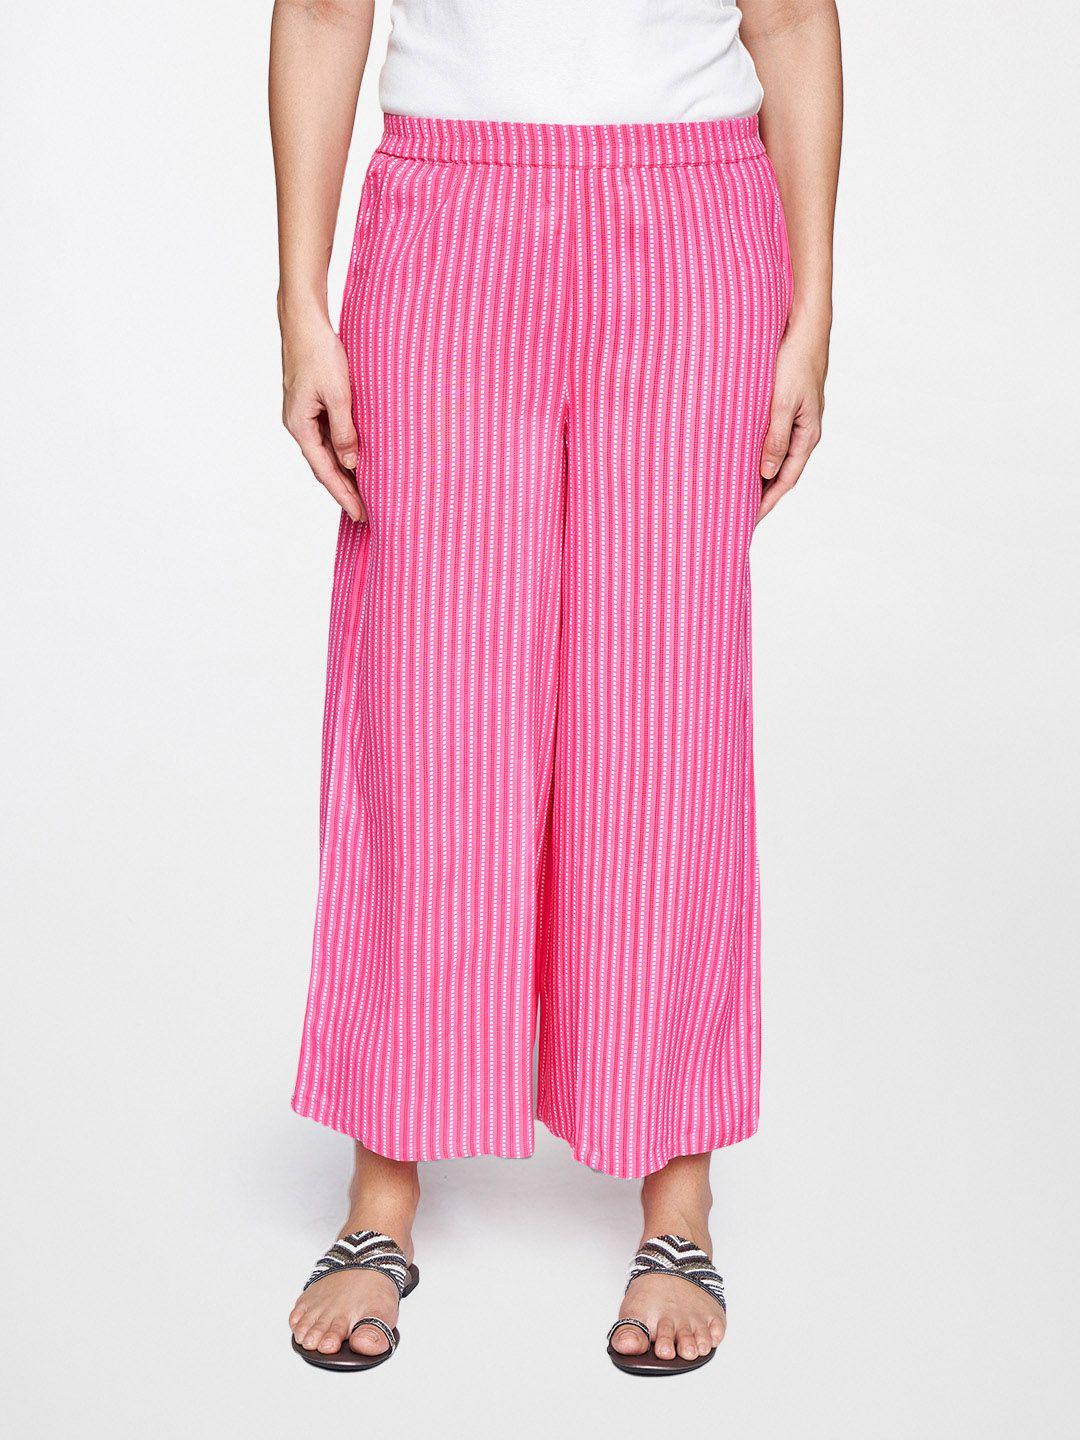 itse-women-pink-striped-trousers